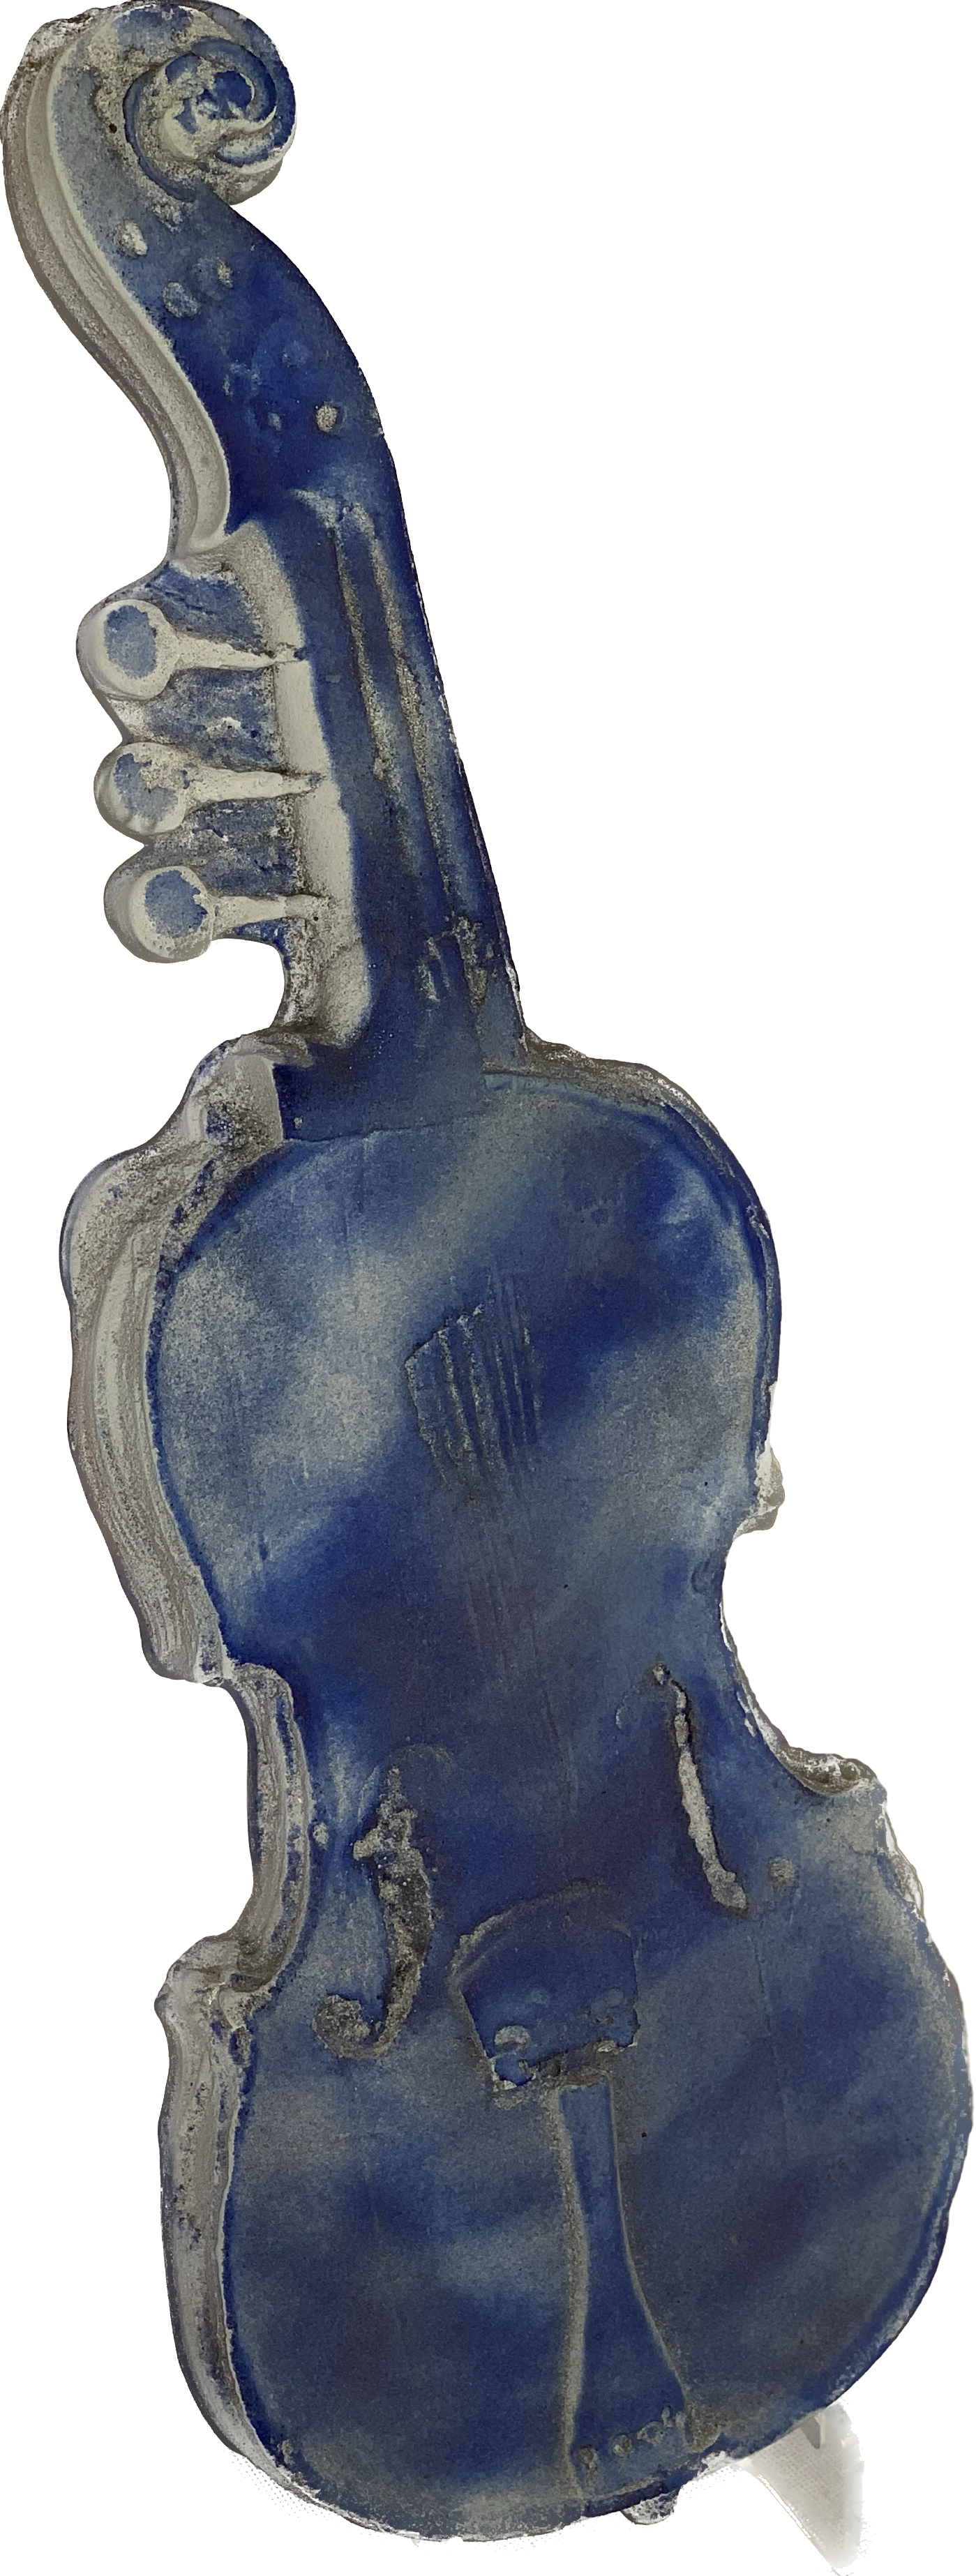 Brisbane, Amanda – Glass Violin Sculpture (blue)